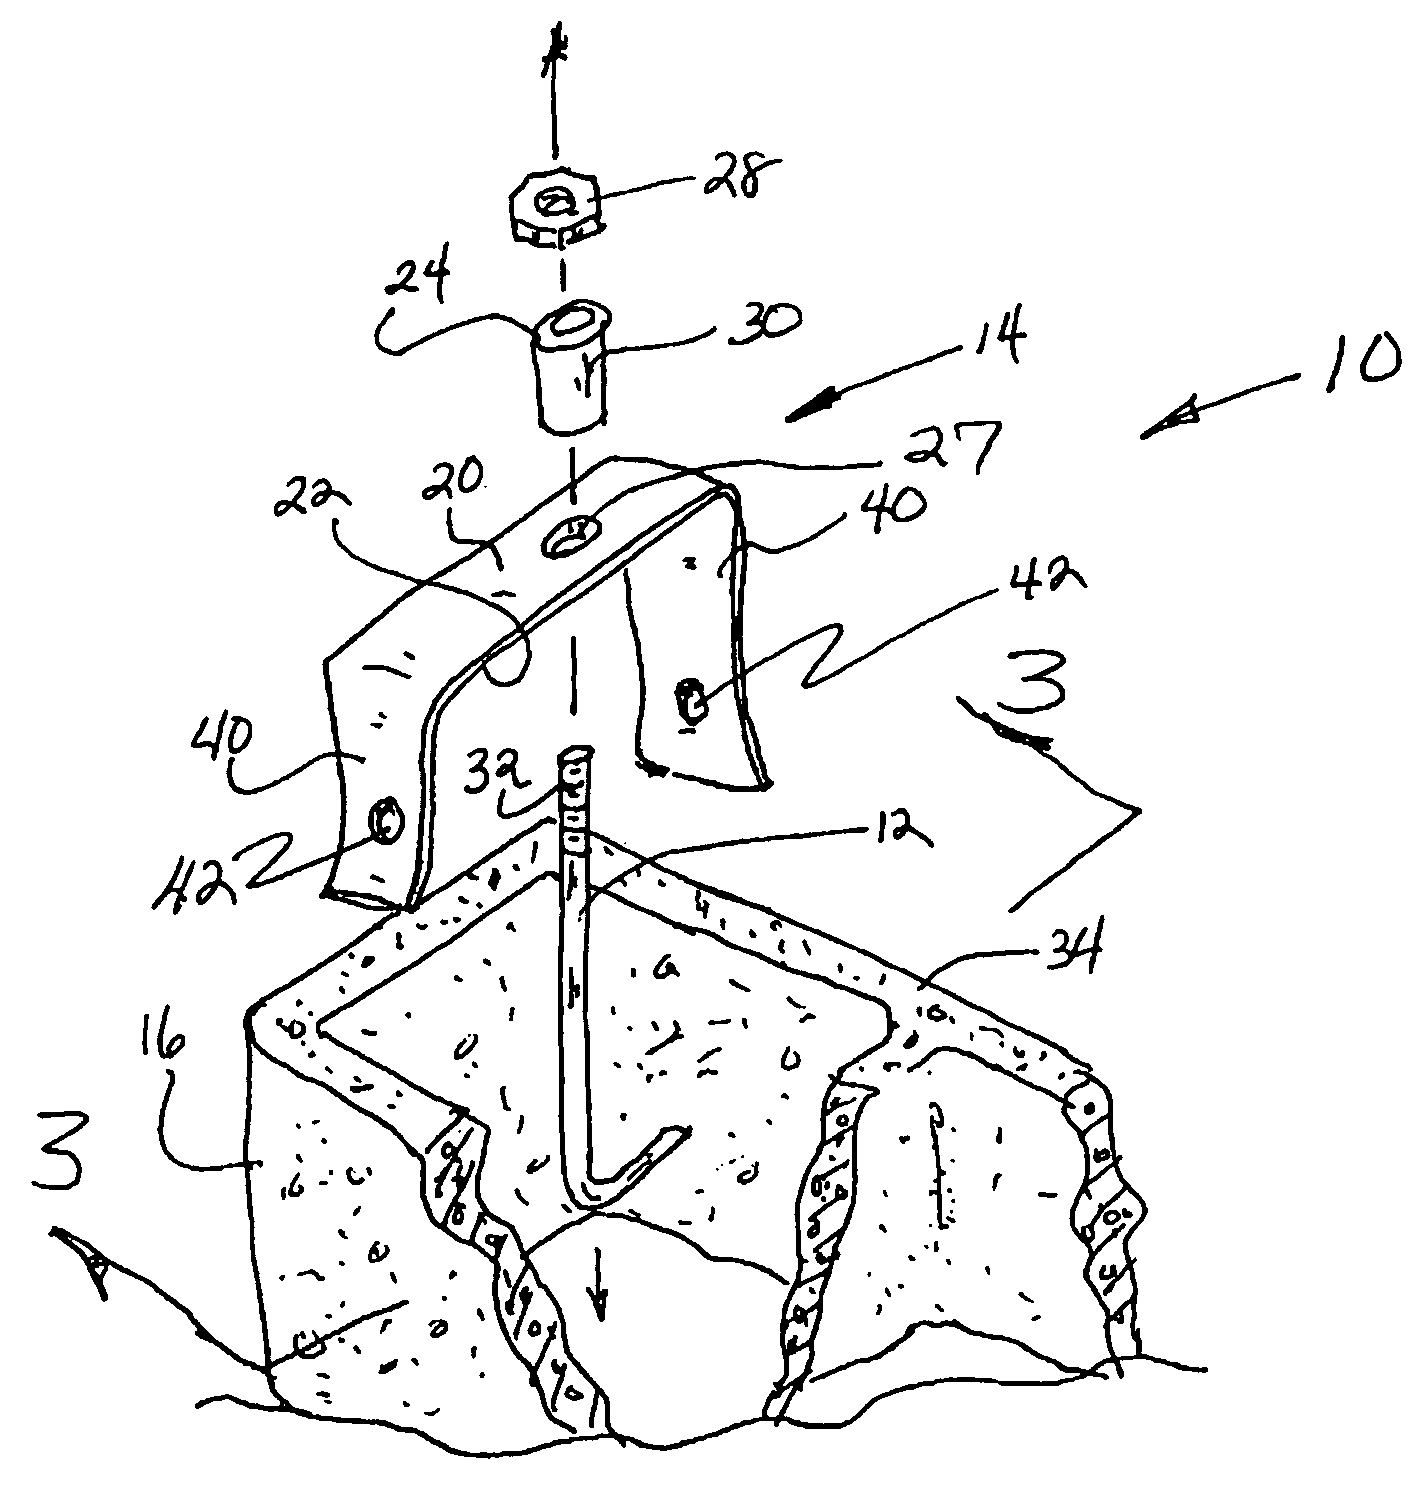 Anchoring framework to a masonry wall